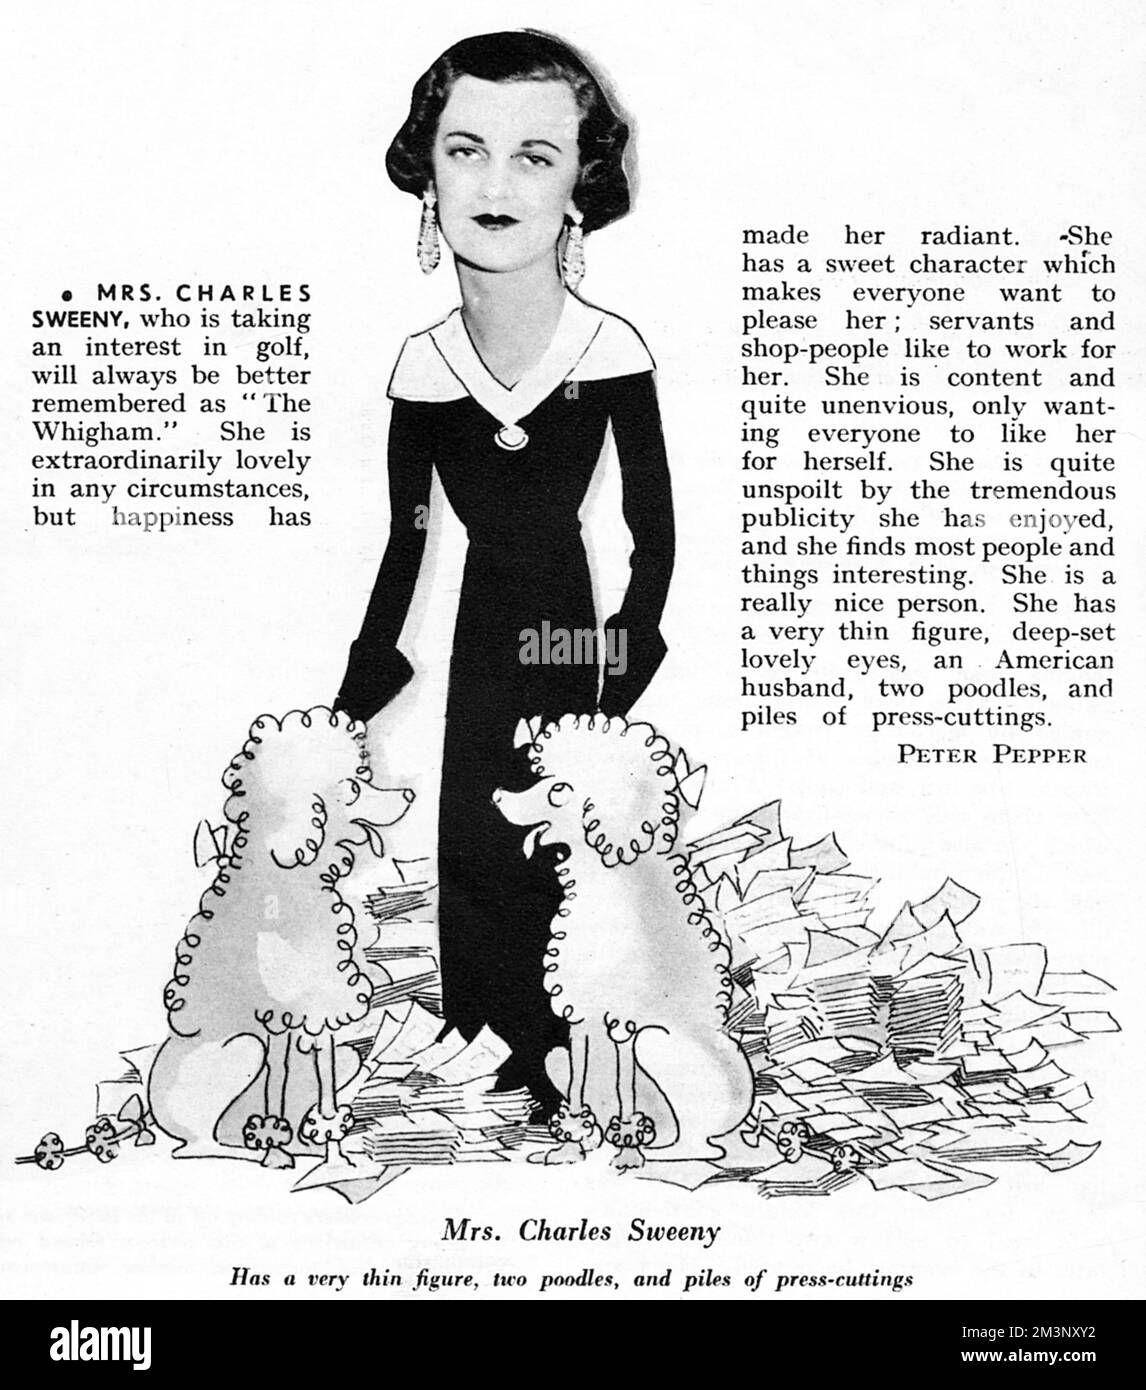 Frau Charles Sweeny, eine der wichtigsten Persönlichkeiten des Jahres 1933, teilweise in Karikatur mit zwei Pudeln (einer Hunderasse, die sie besonders mochte) und umgeben von Stapeln Pressespielen dargestellt. Datum: 1933 Stockfoto